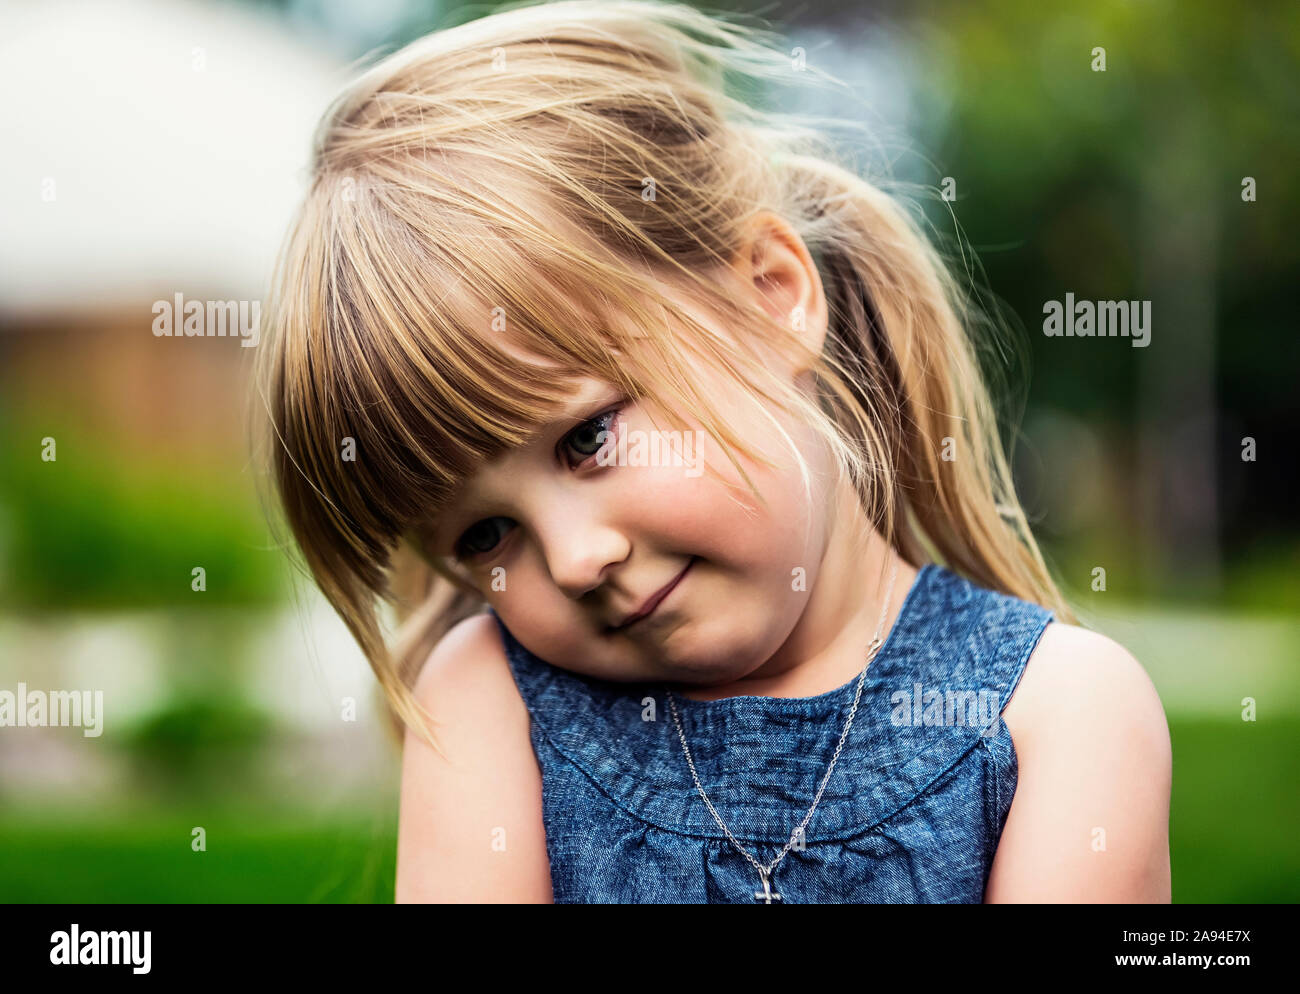 Ritratto di una giovane ragazza carina con capelli biondi che guarda giù nello shyness; Edmonton, Alberta, Canada Foto Stock